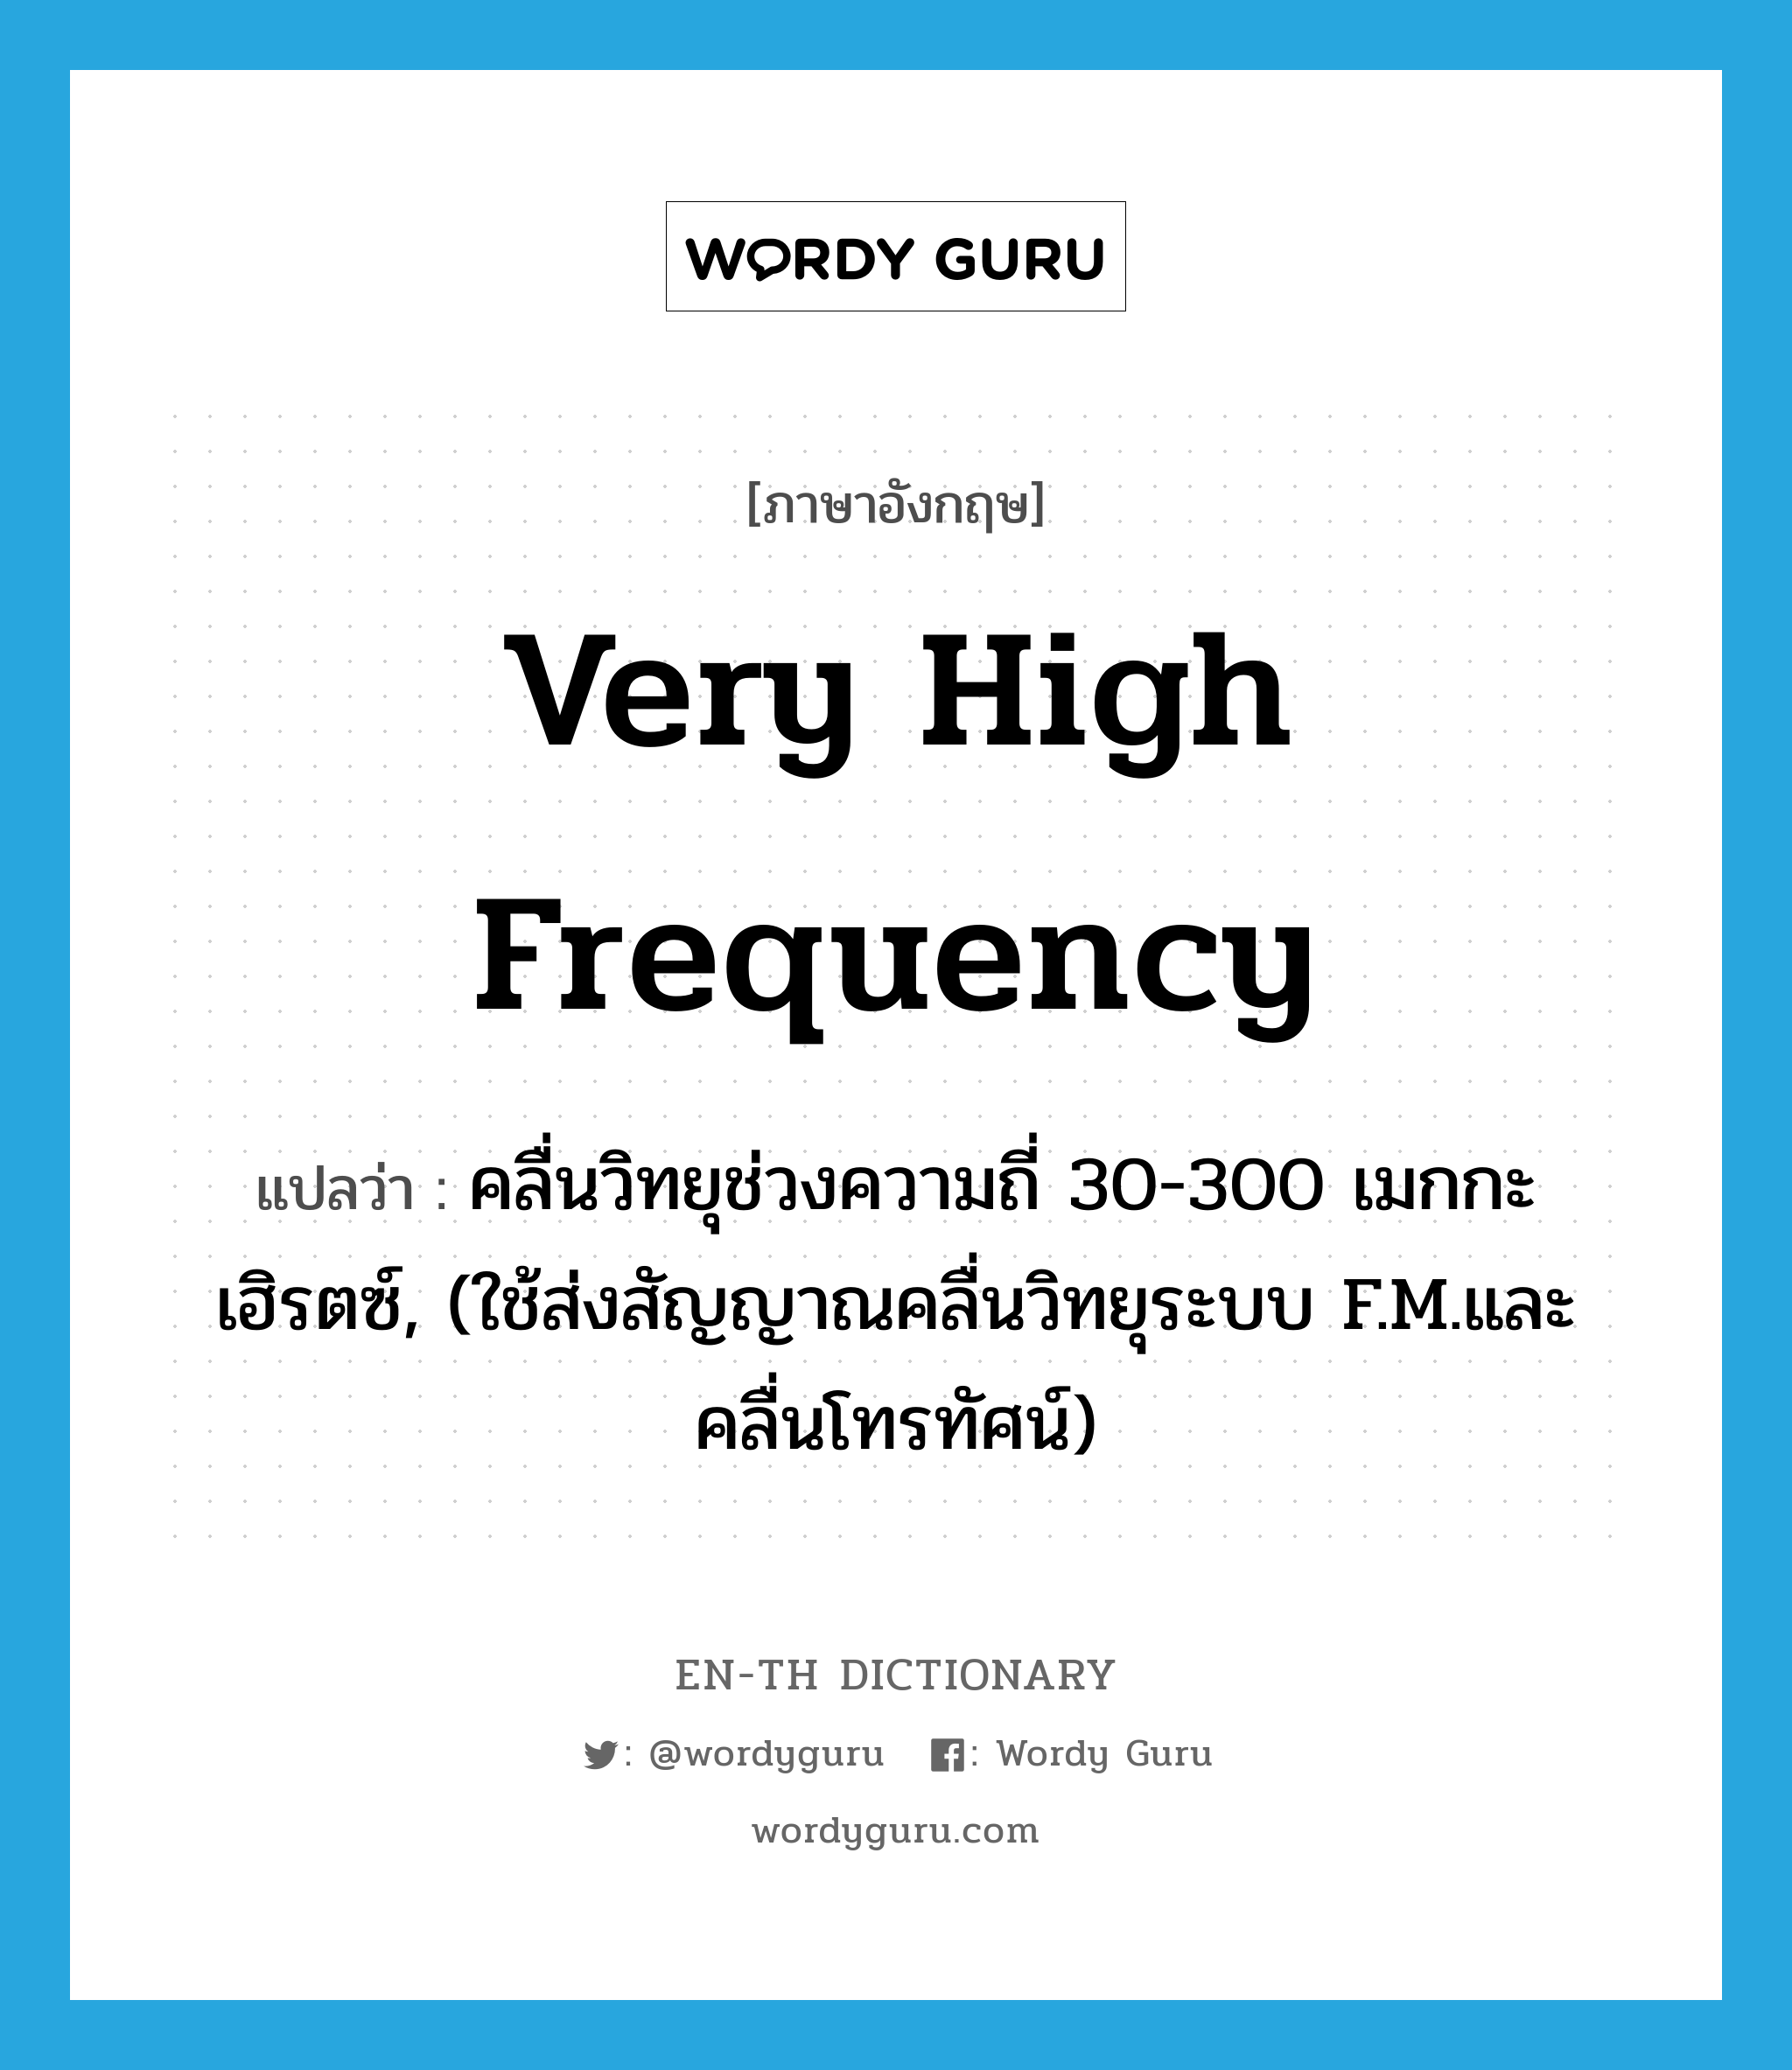 very high frequency แปลว่า?, คำศัพท์ภาษาอังกฤษ very high frequency แปลว่า คลื่นวิทยุช่วงความถี่ 30-300 เมกกะเฮิรตซ์, (ใช้ส่งสัญญาณคลื่นวิทยุระบบ F.M.และคลื่นโทรทัศน์) ประเภท N หมวด N